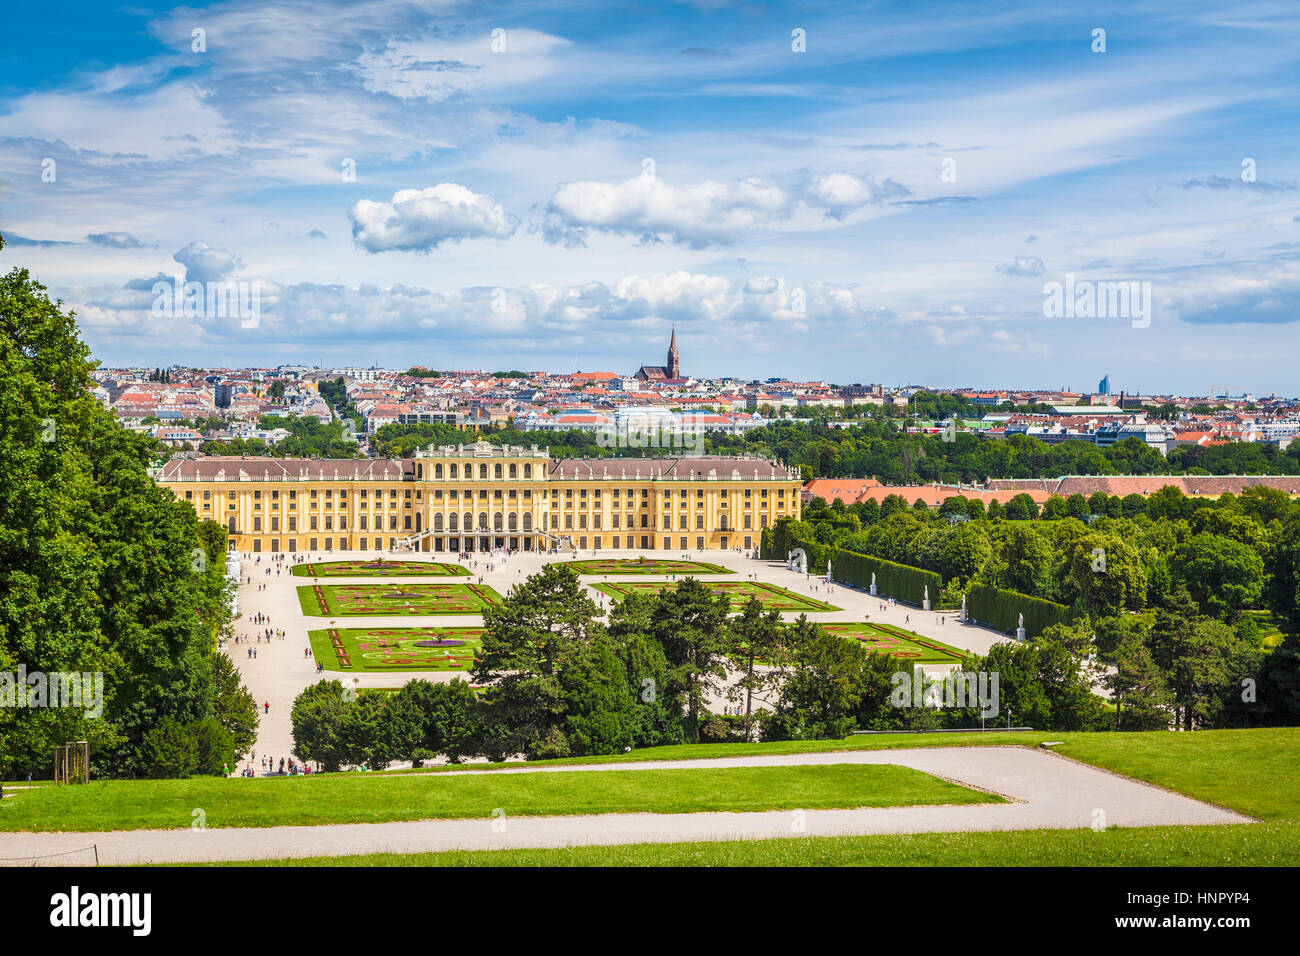 Visualizzazione classica del famoso Palazzo di Schonbrunn con grande parterre giardino in una bella giornata di sole con cielo blu e nuvole in estate, Vienna, Austria Foto Stock